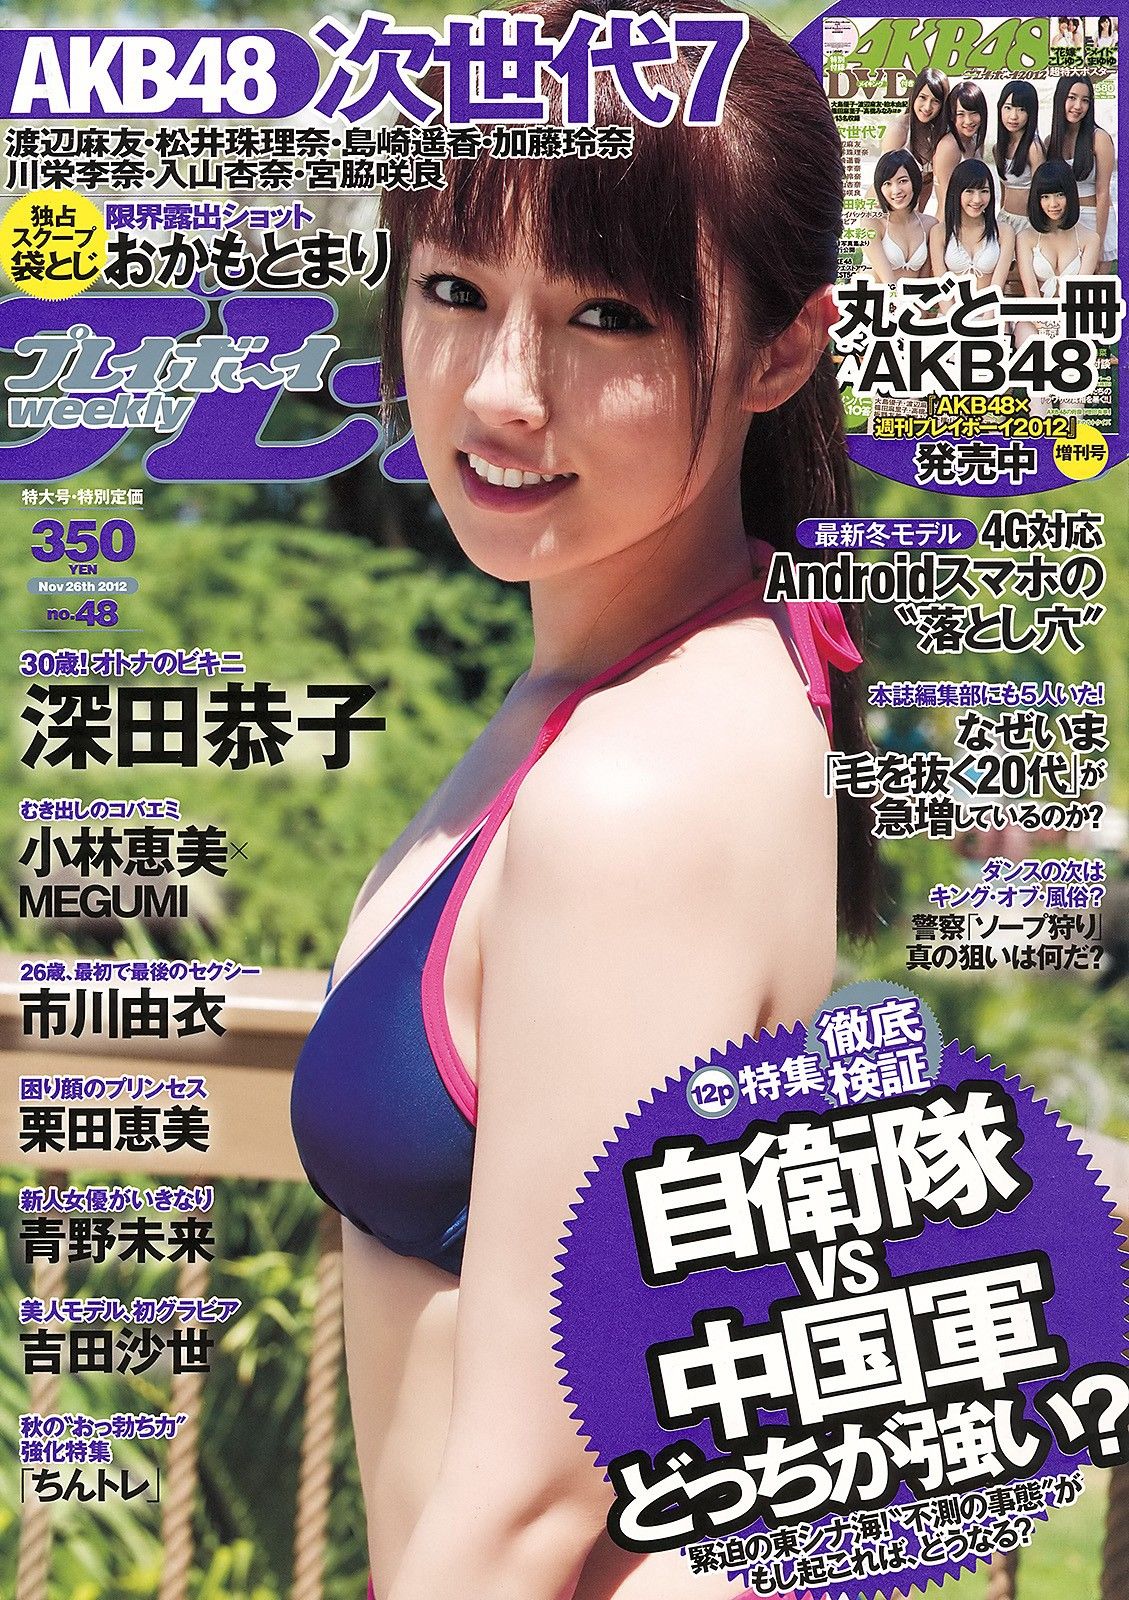 深田恭子 小林恵美 市川由衣 青野未来 AKB48[Weekly Playboy] No.480